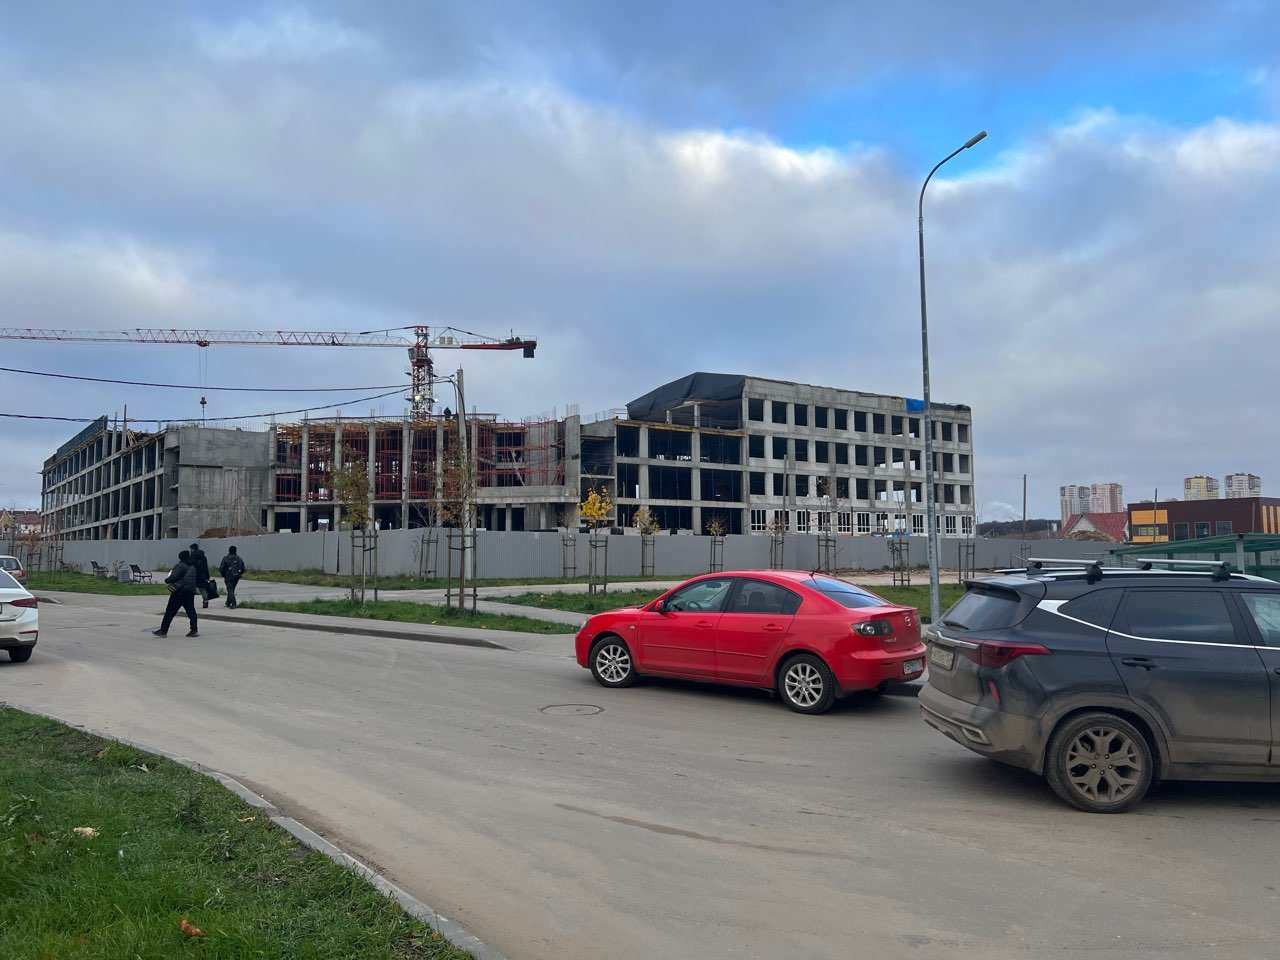 Школу на 800 мест начали строить в Кузнечихе Нижнего Новгорода - фото 1